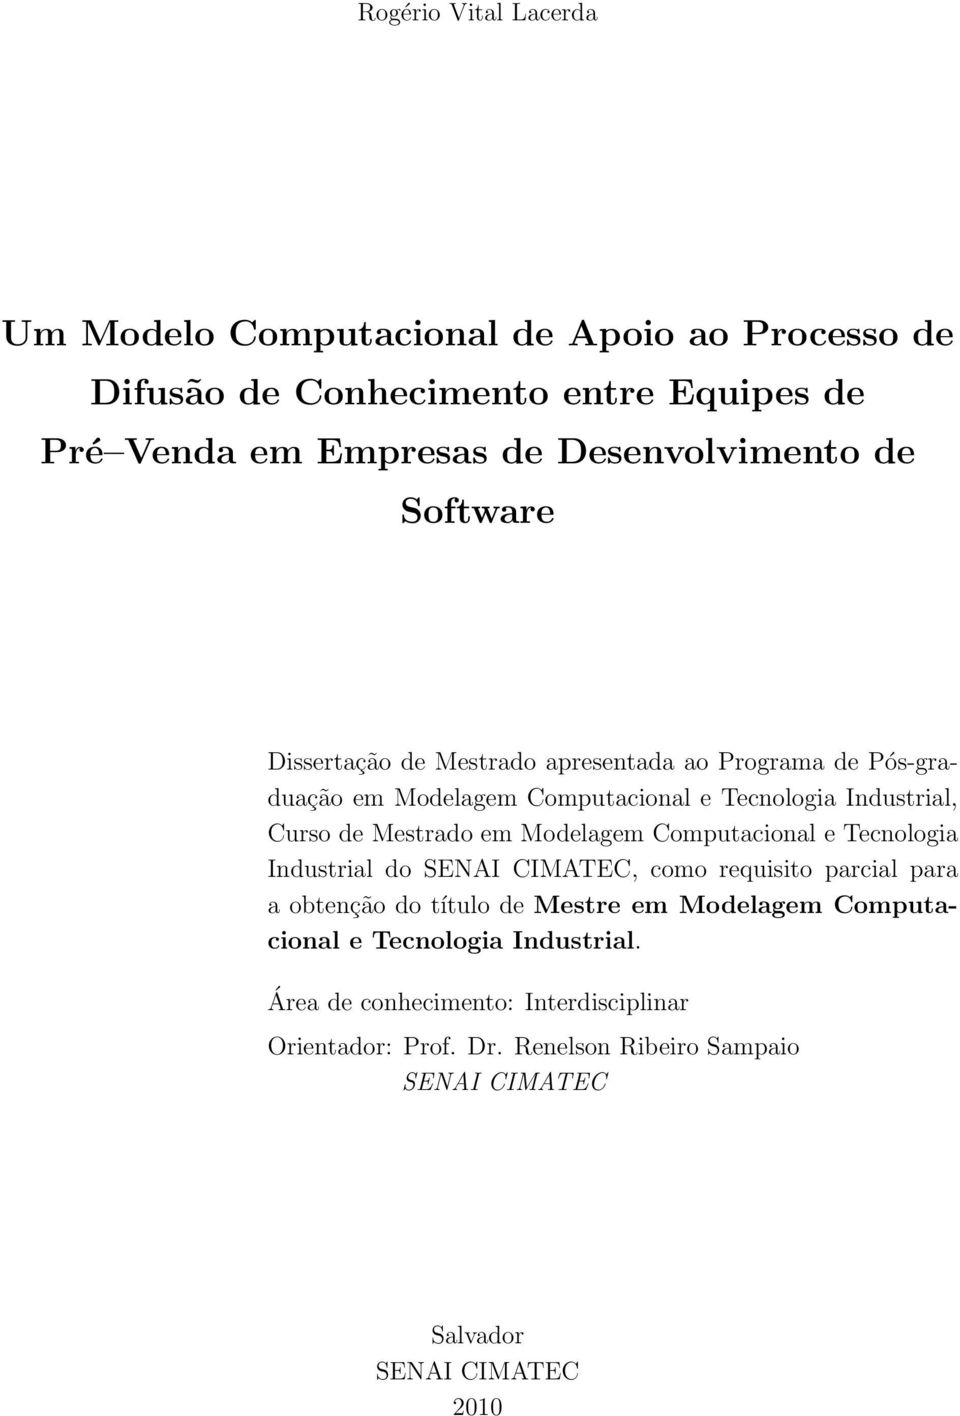 Modelagem Computacional e Tecnologia Industrial do SENAI CIMATEC, como requisito parcial para a obtenção do título de Mestre em Modelagem Computacional